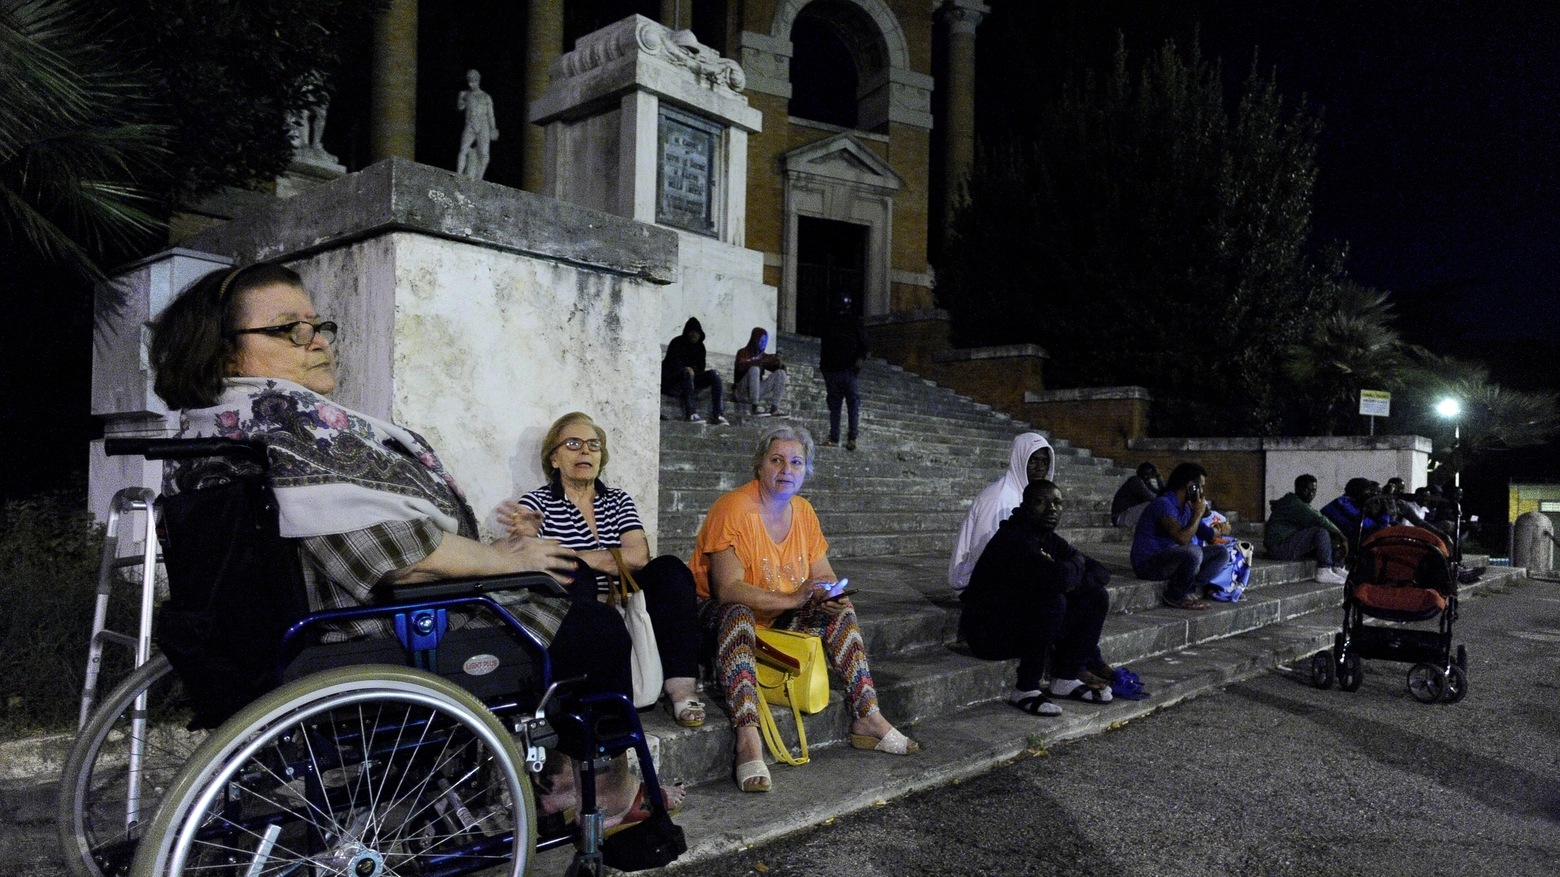 Gente in strada a Macerata (Calavita)